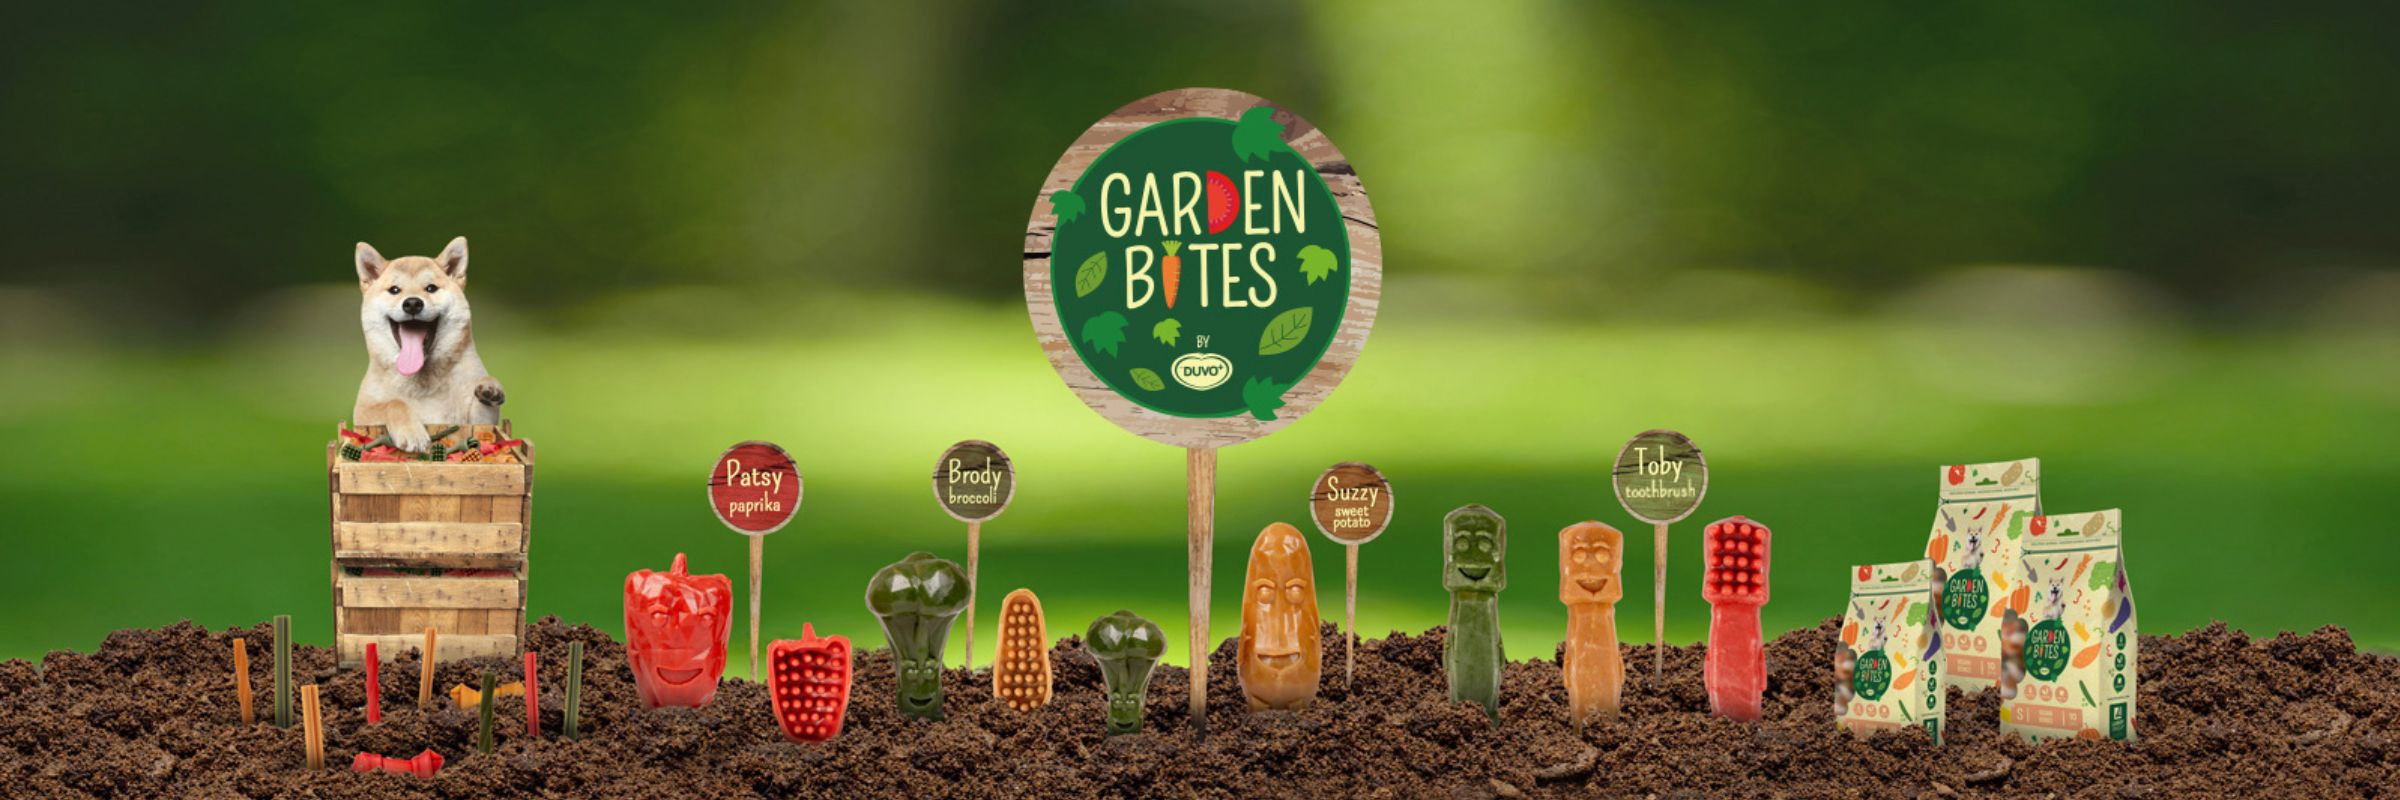 Garden Bites vegane Kaurtikel bei Fairtails